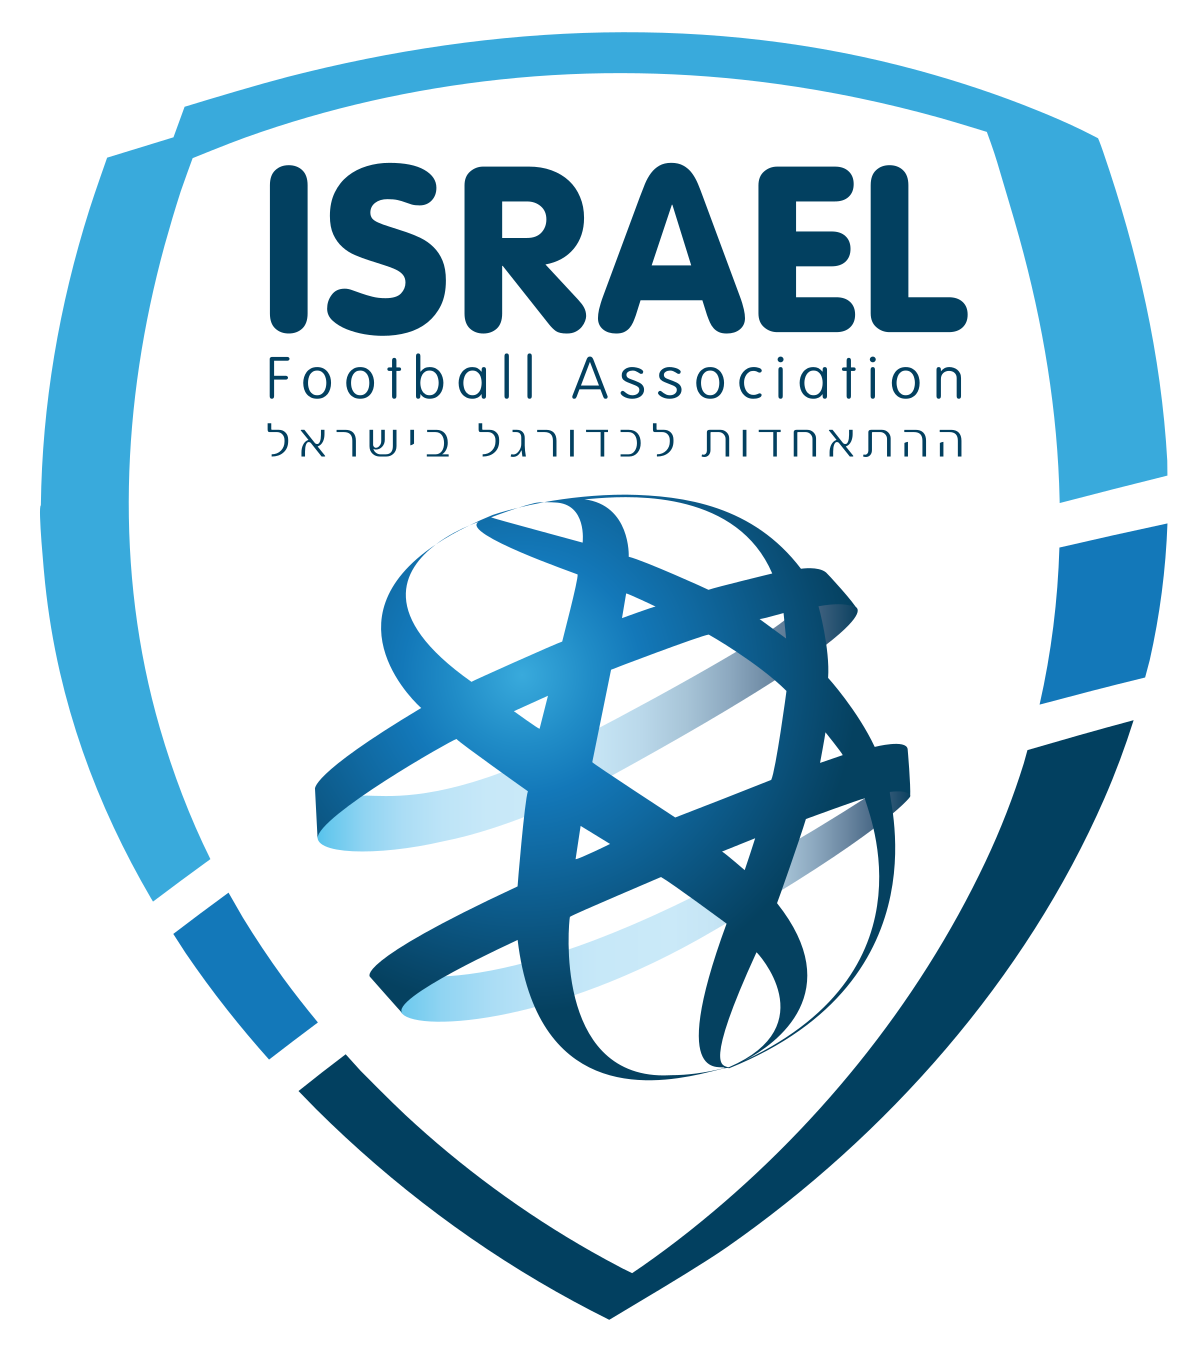 以色列 logo